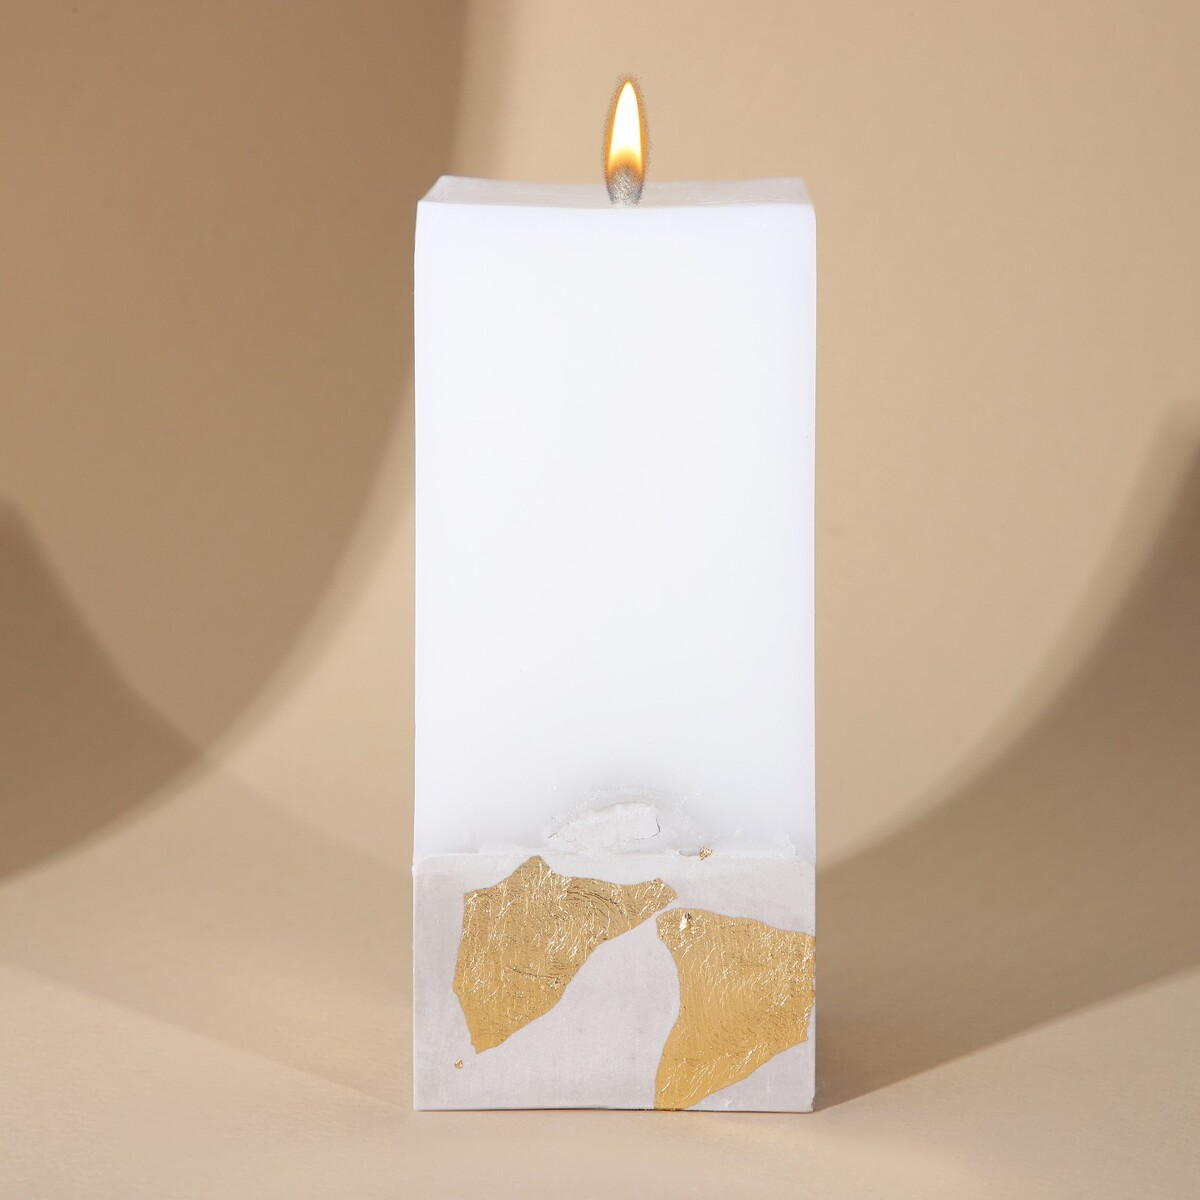 Свеча интерьерная белая с бетоном (поталь), 6 х 6 х 14 см свеча античная 2 2х 25 см лакированная белая